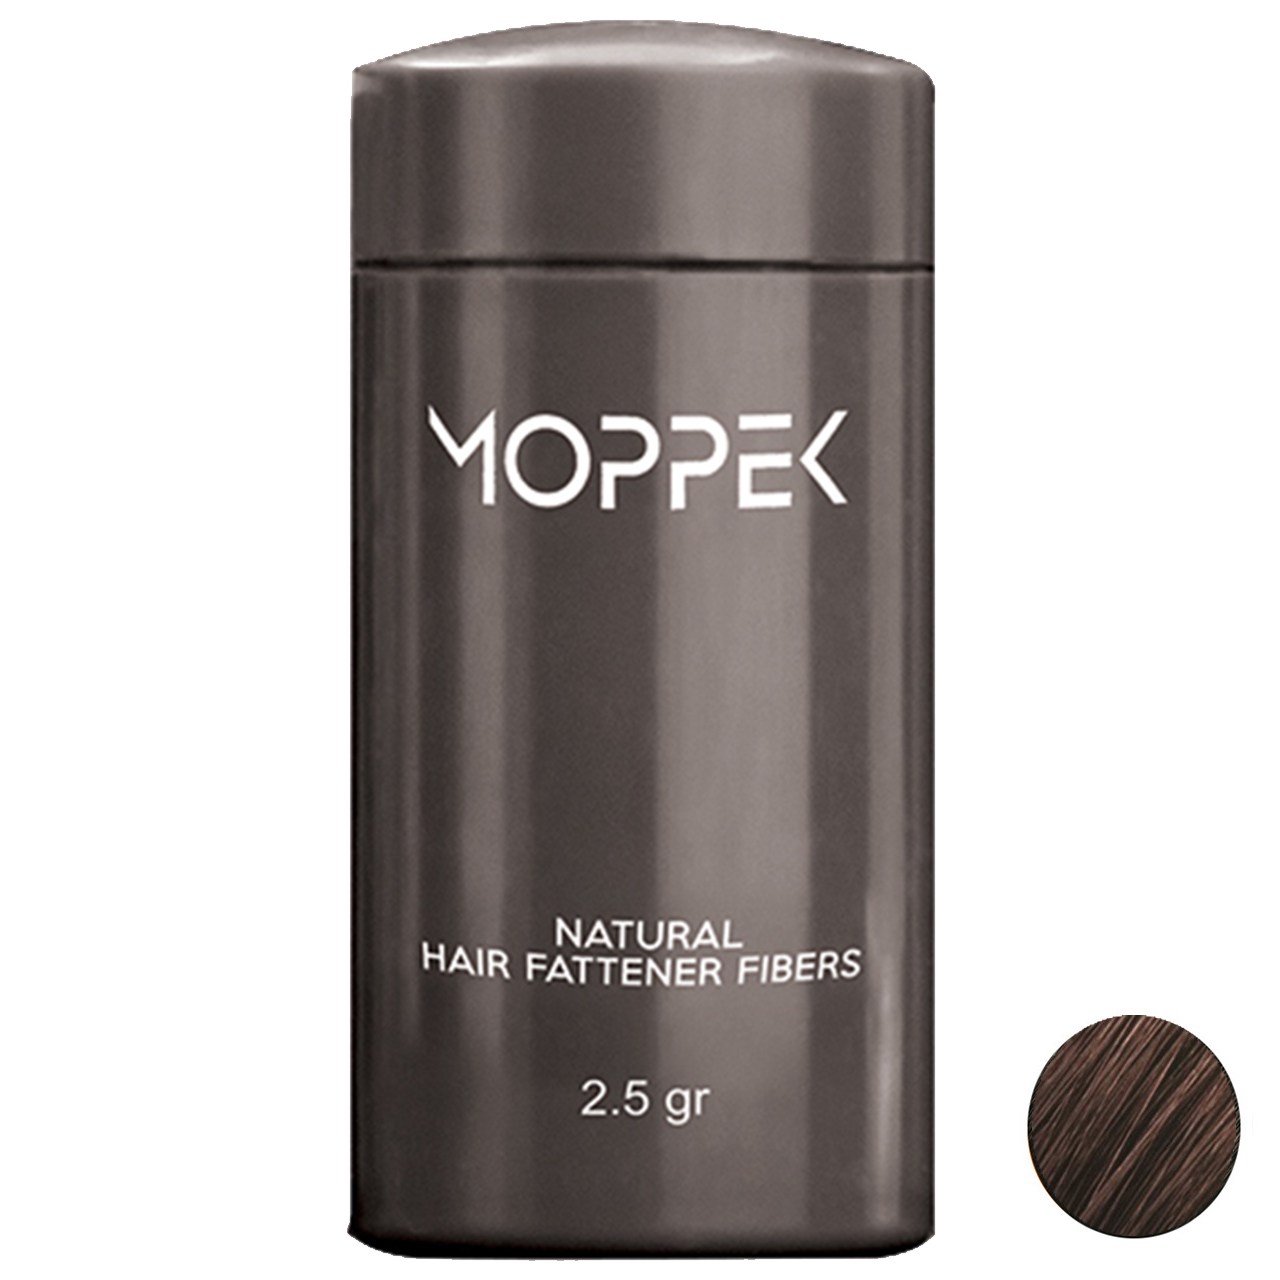 پودر پرپشت کننده مو موپک مدل Dark Brown وزن 2.5 گرم رنگ قهوه ای تیره